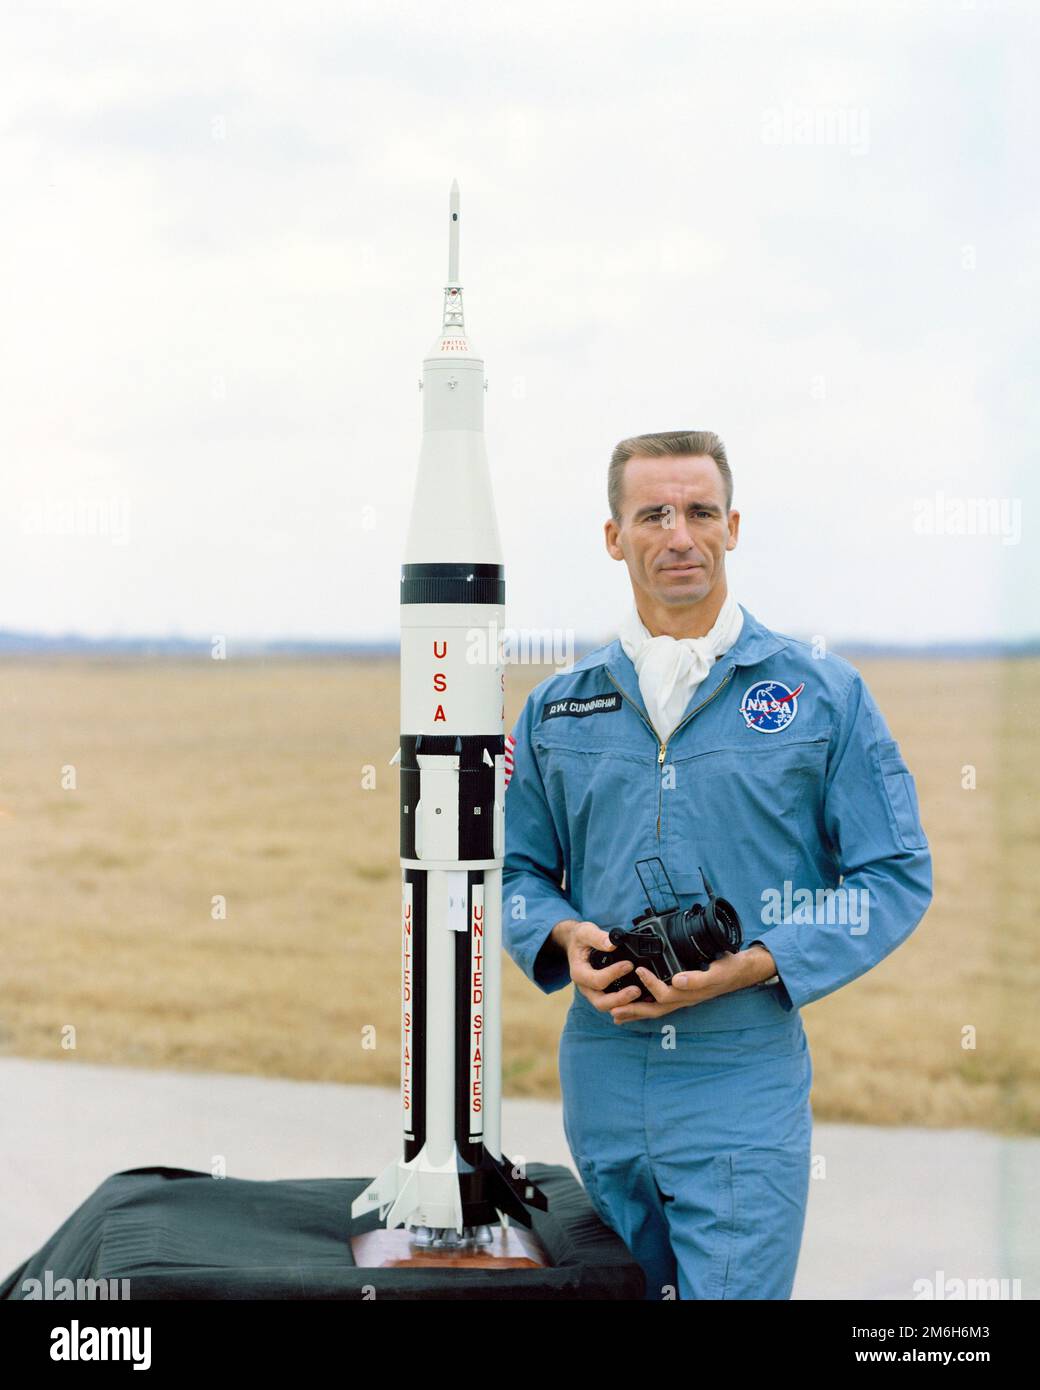 Cape Canaveral, États-Unis. 13 février 1968. L'astronaute de la NASA Walter Cunningham, pilote de module lunaire pour la mission Apollo 7, pose avec un modèle du module lunaire Apollo 7 et du navire-fusée Saturne au Centre spatial Kennedy, à 13 février 1968, au Cap Canaveral, en Floride. Cunningham meurt 4 janvier 2023 à l'âge de 90 ans, le dernier membre survivant de la mission Apollo 7 de la NASA. Banque D'Images